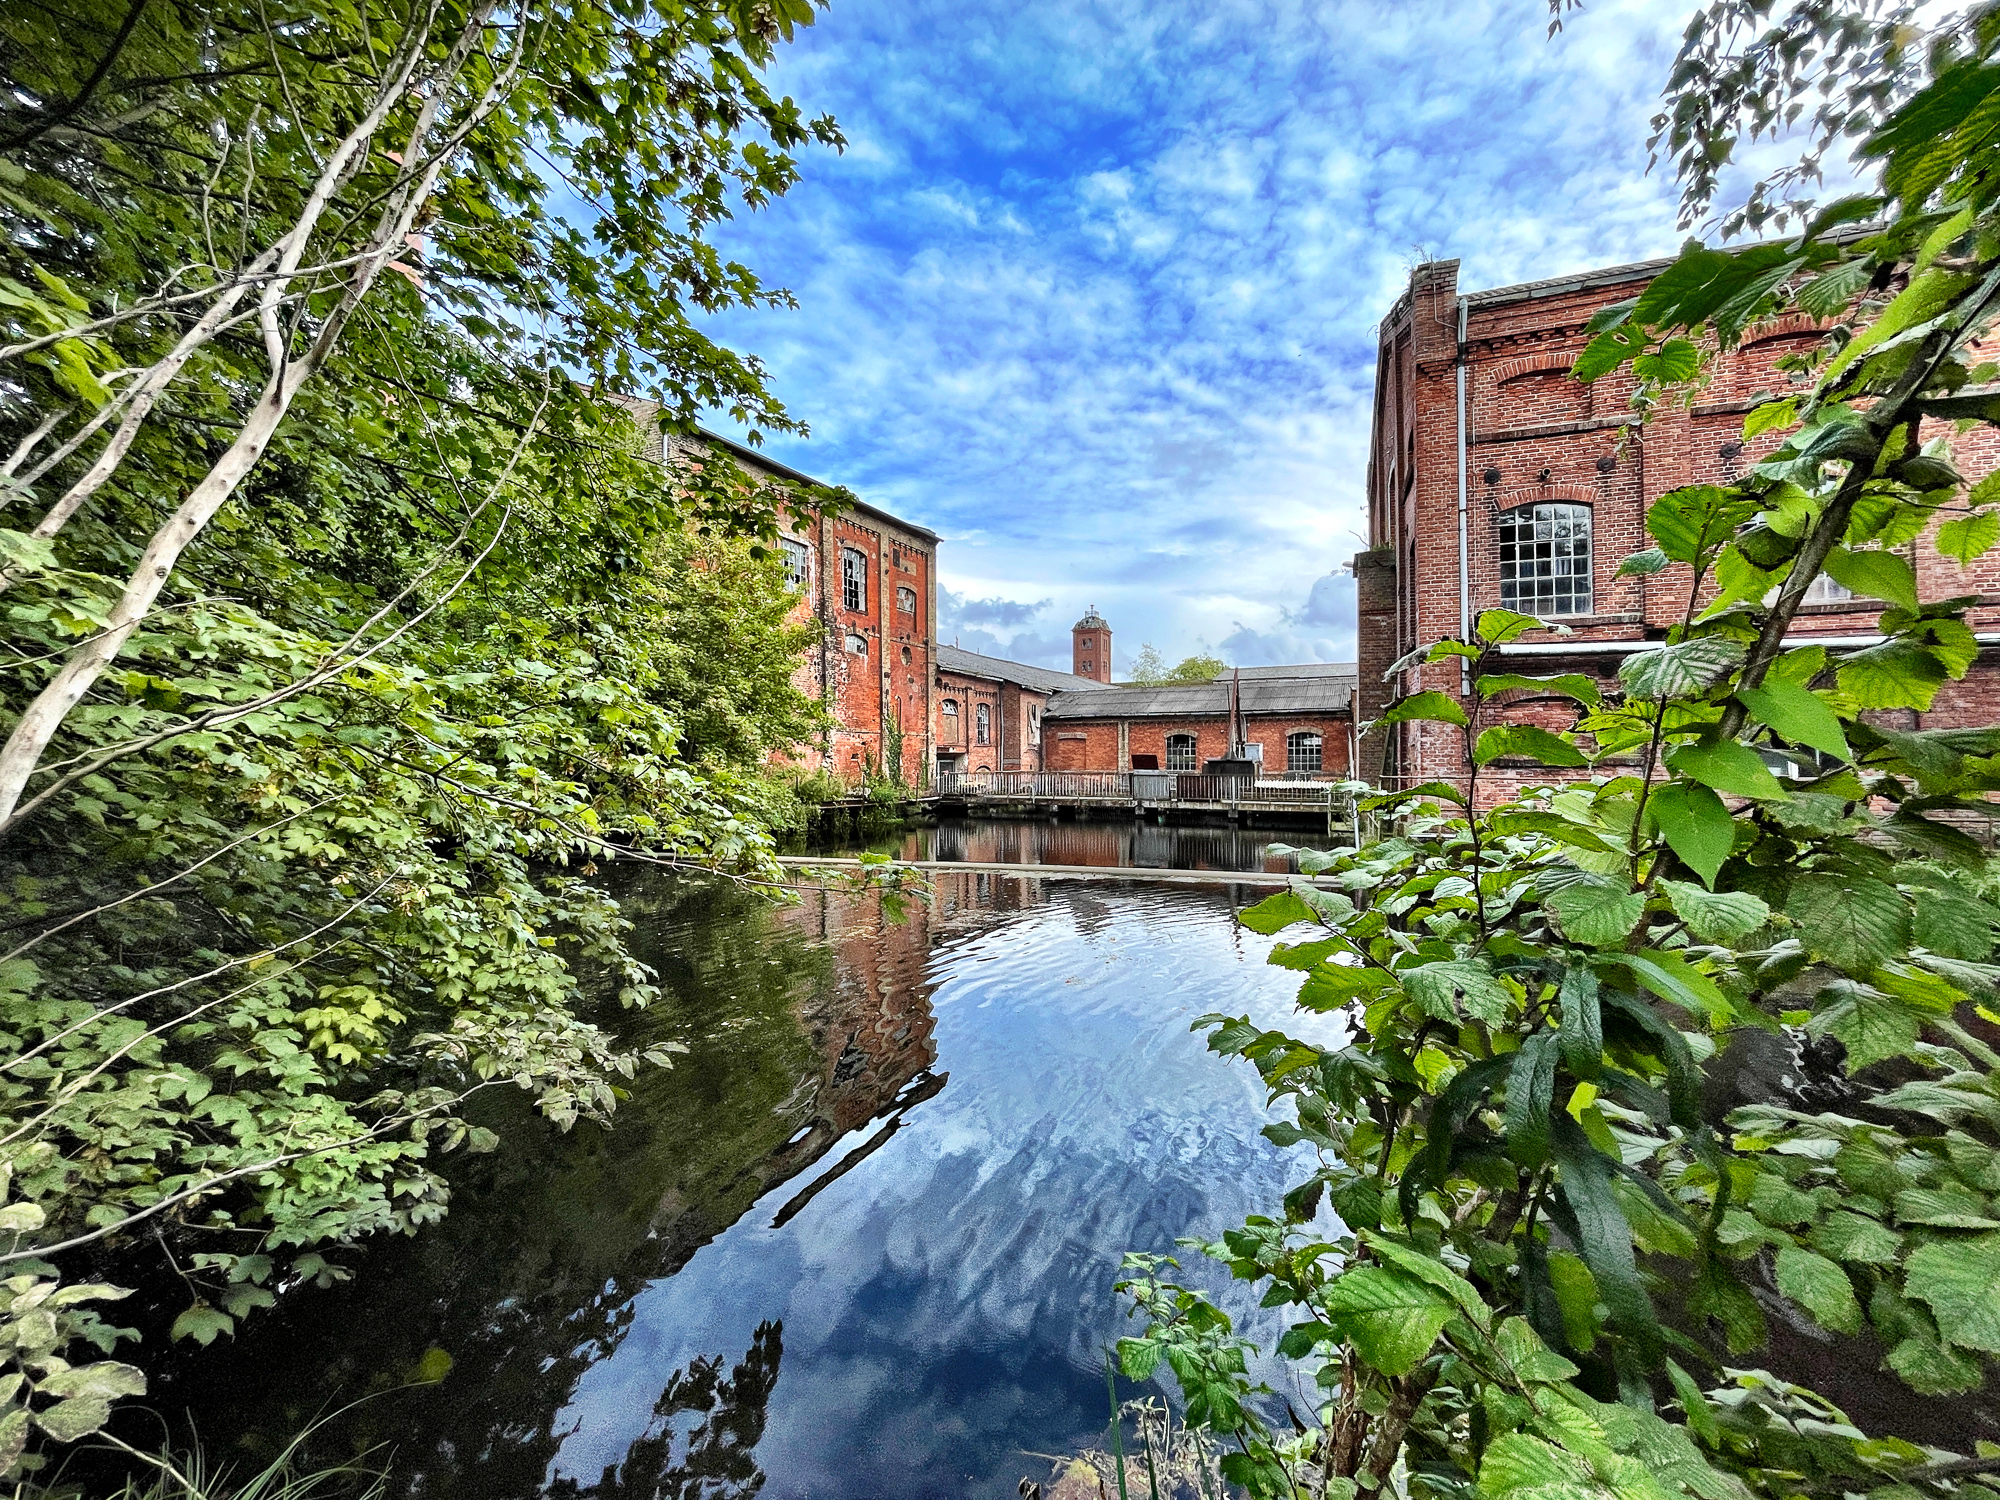 Backstein-FabrikAnlage an einem Wasserlauf, umgeben von vielen Bäumen. SchäfchenWolken an blauem Himmel.